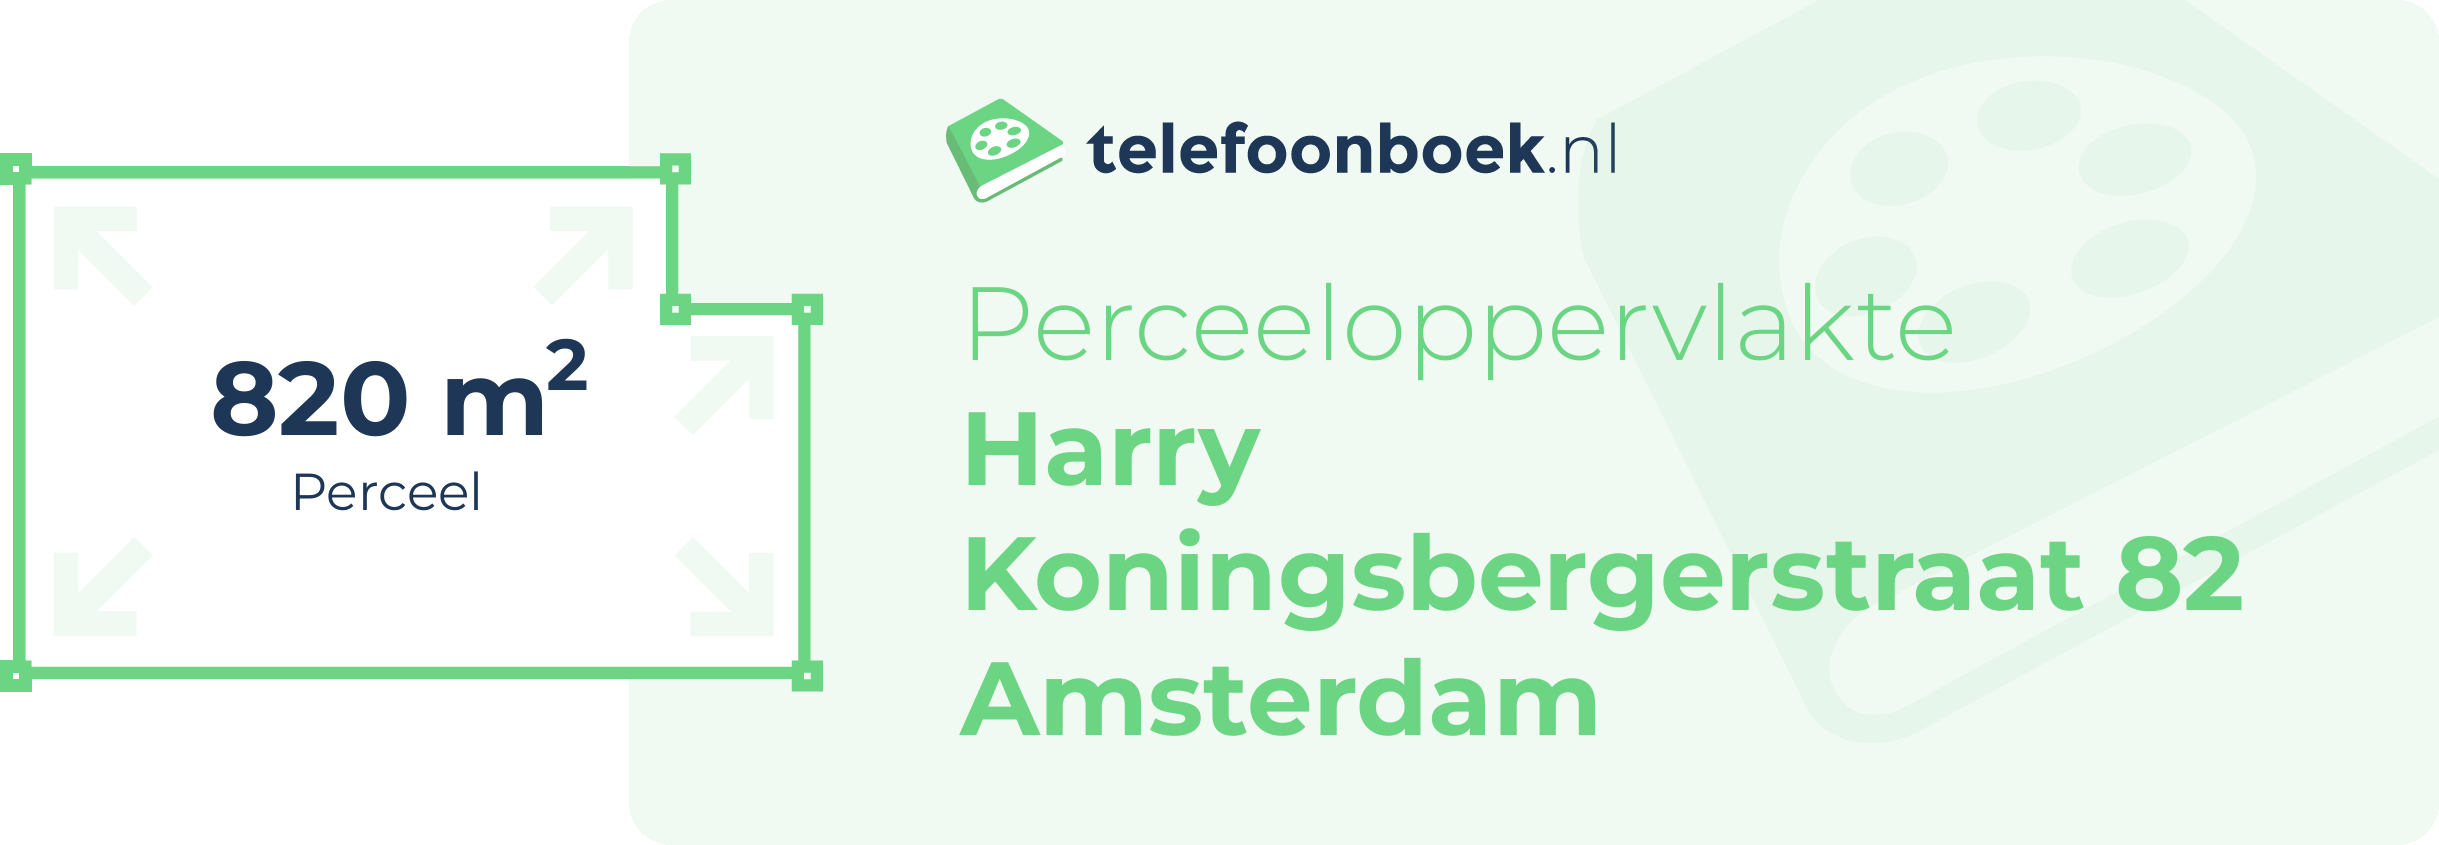 Perceeloppervlakte Harry Koningsbergerstraat 82 Amsterdam